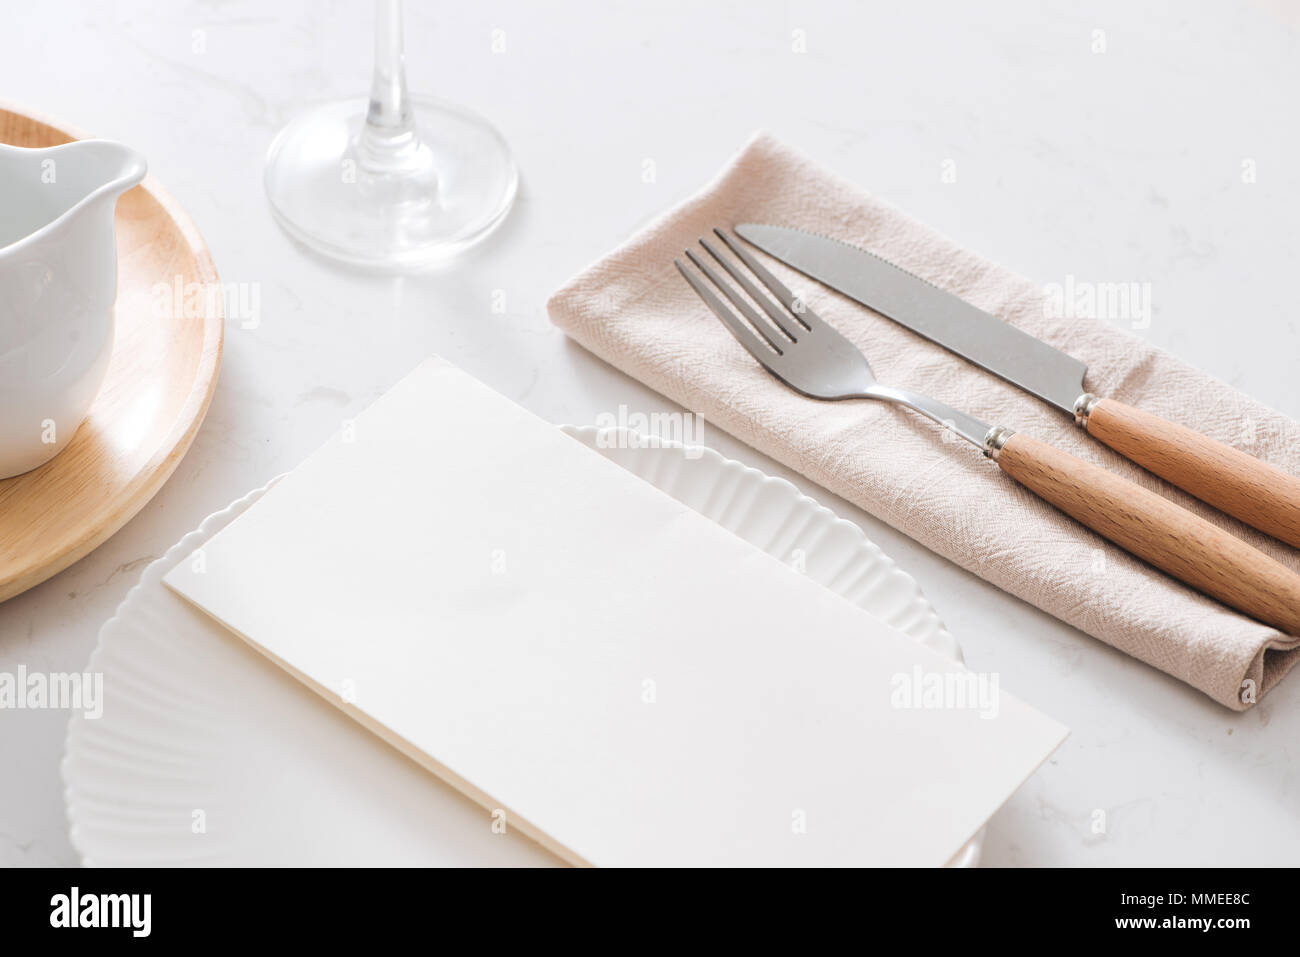 Tischdekoration. Weiße Platten, Gabel, Messer am grauen Stein Platte Stockfoto